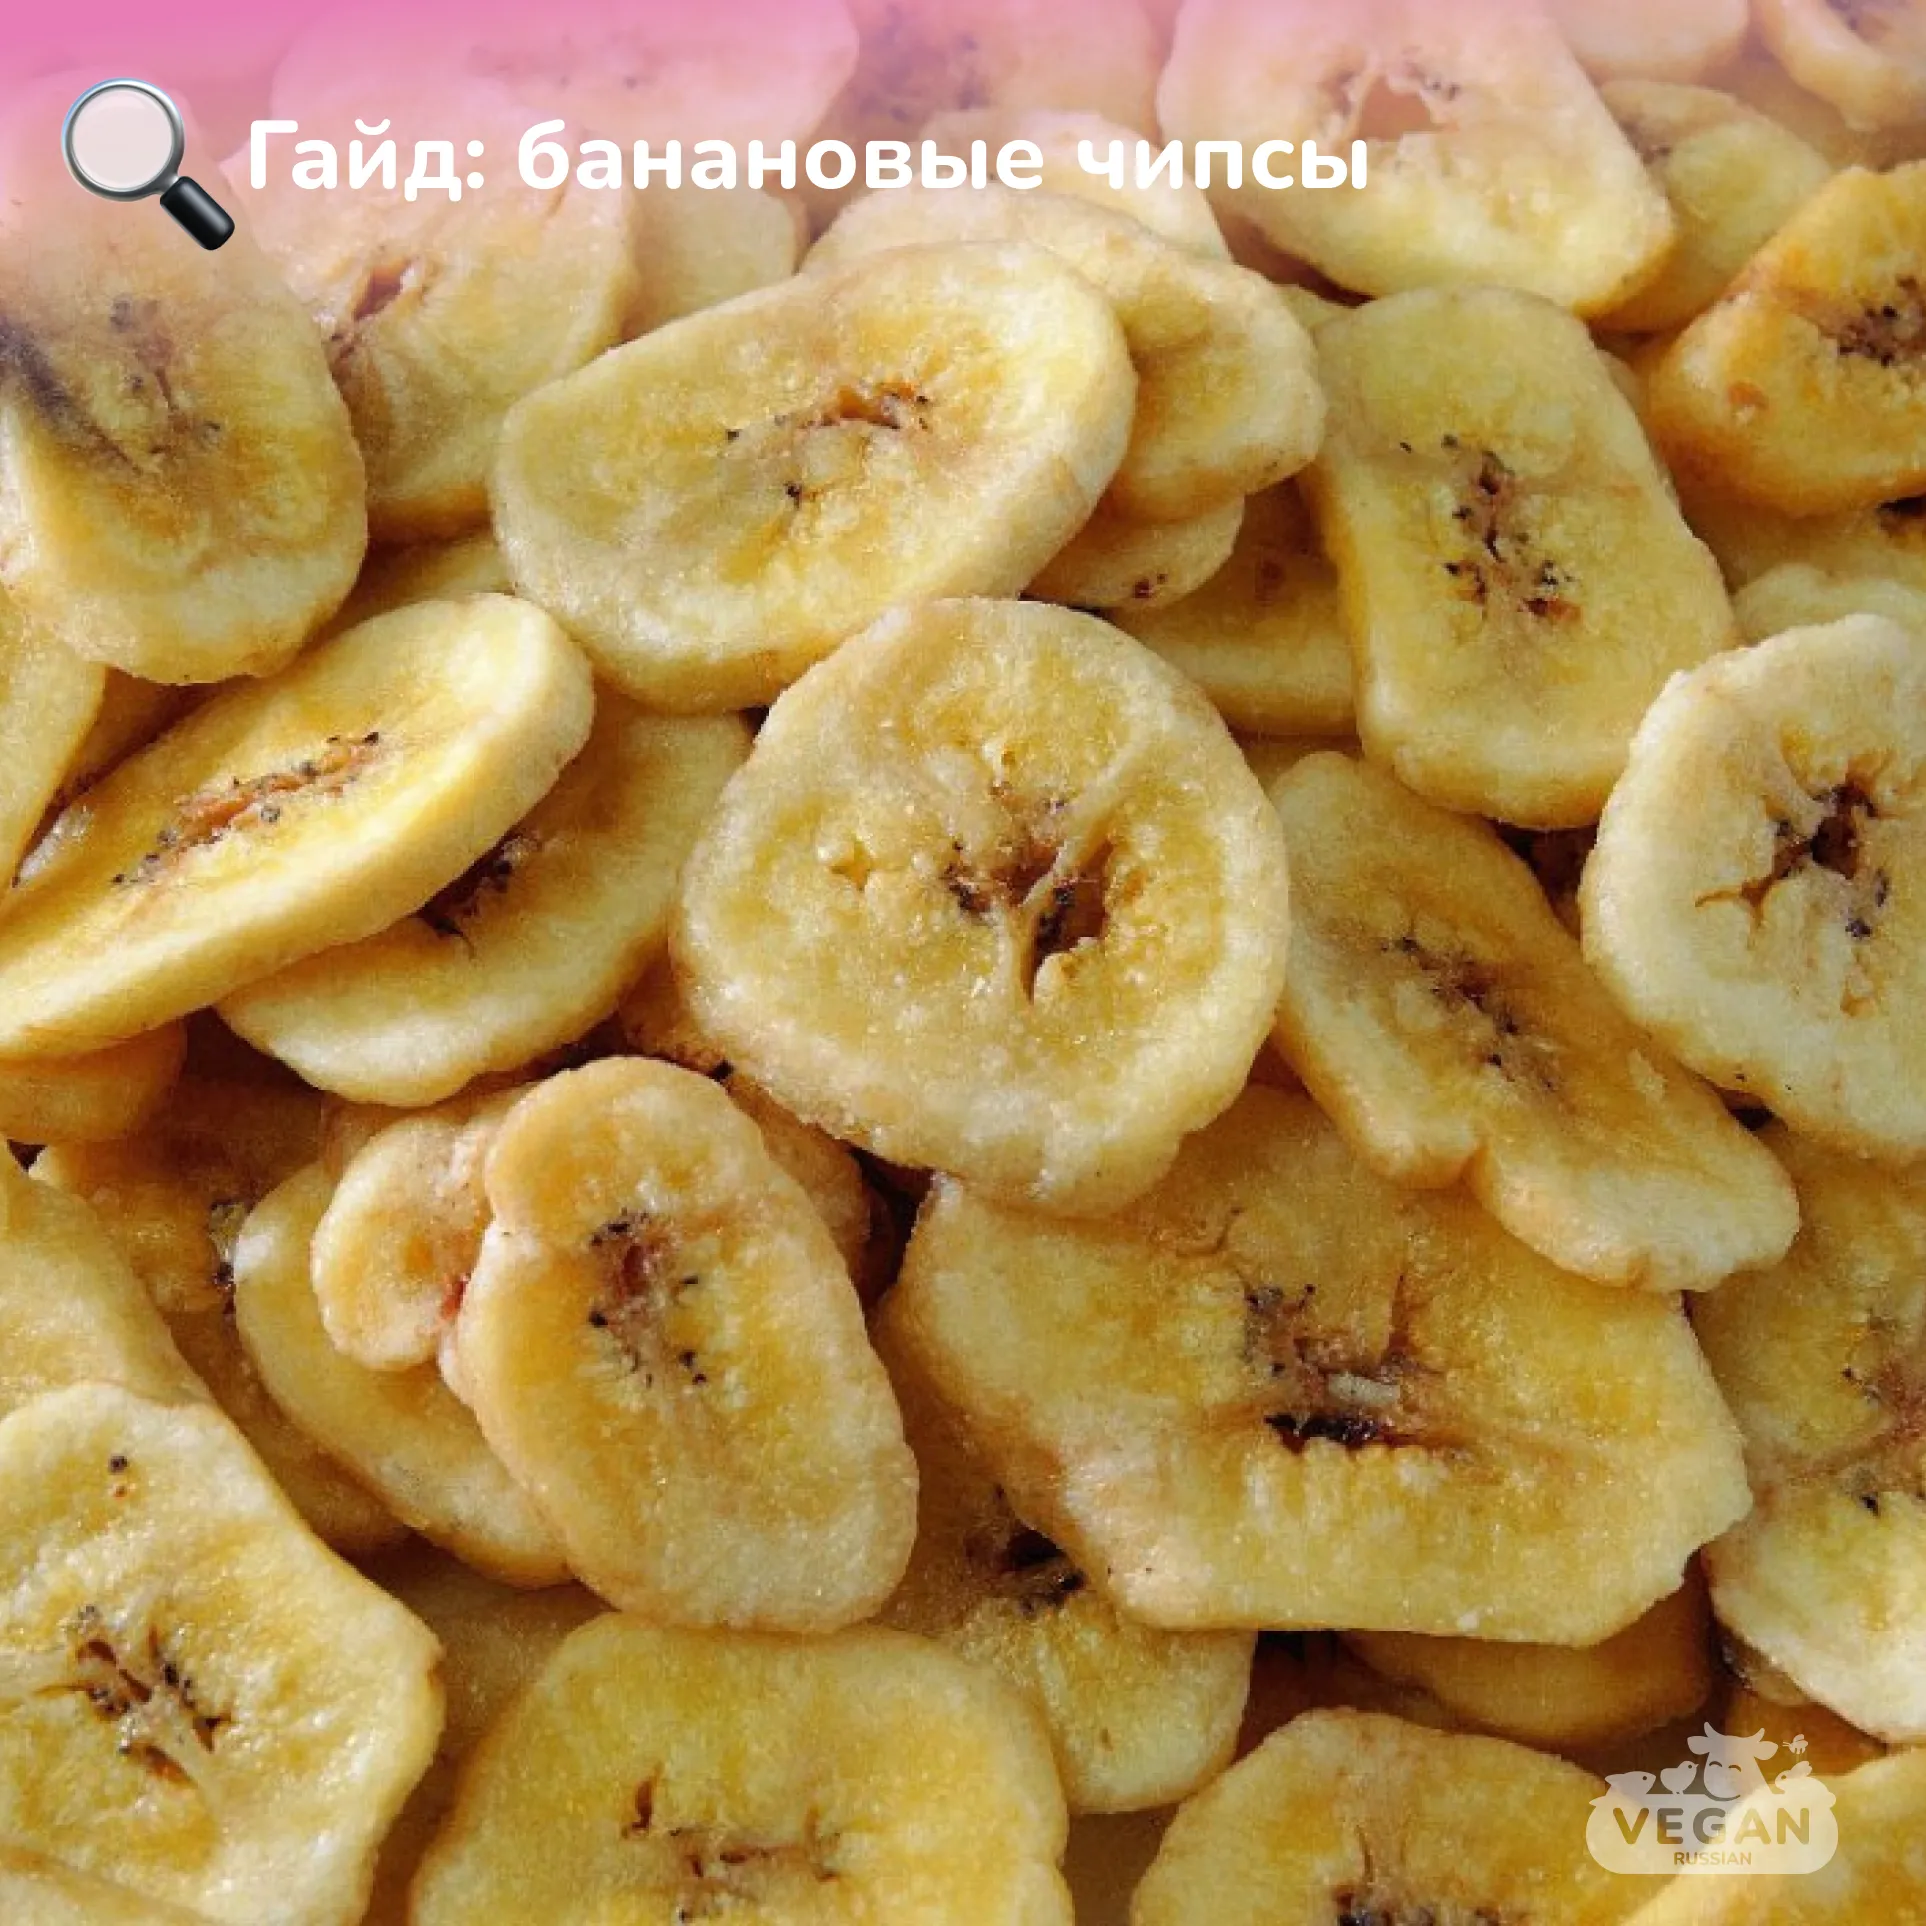 Гайд: банановые чипсы